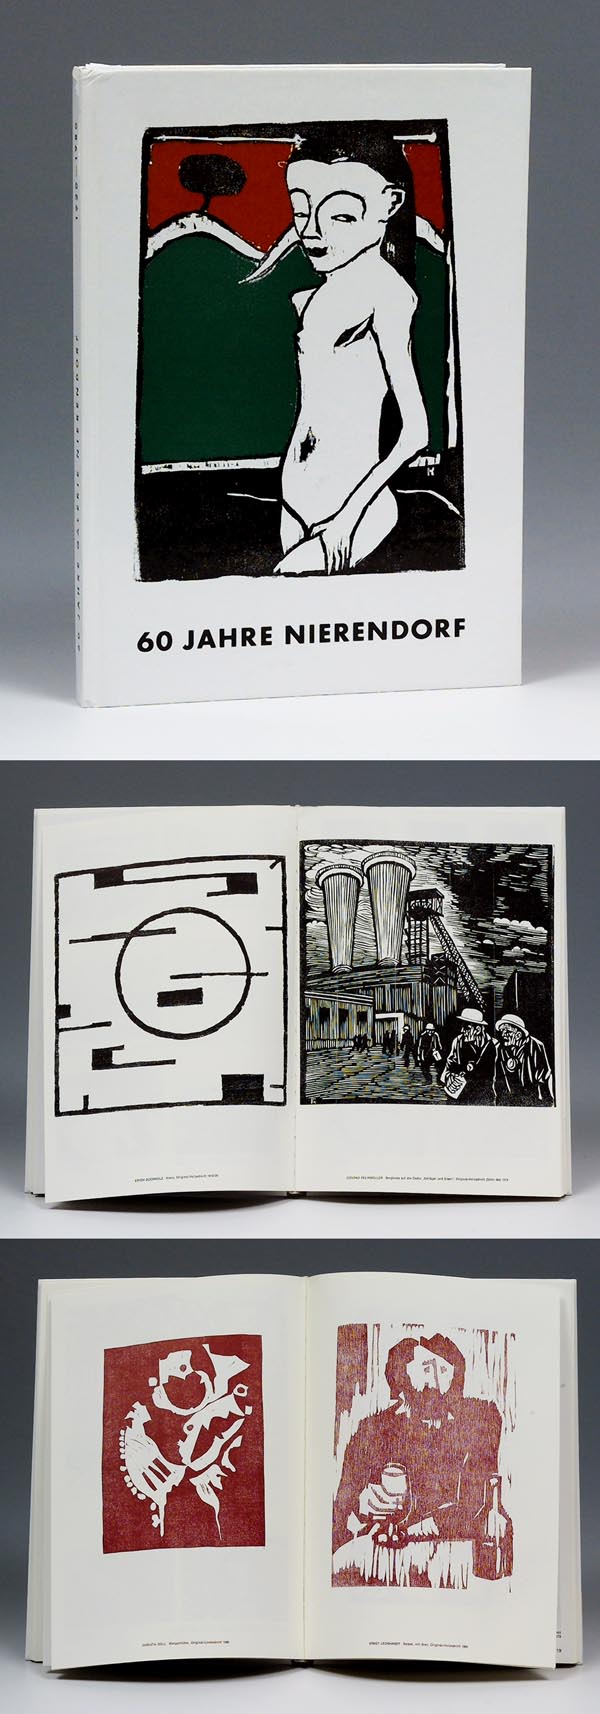 60 Jahre Galerie Nierendorf.